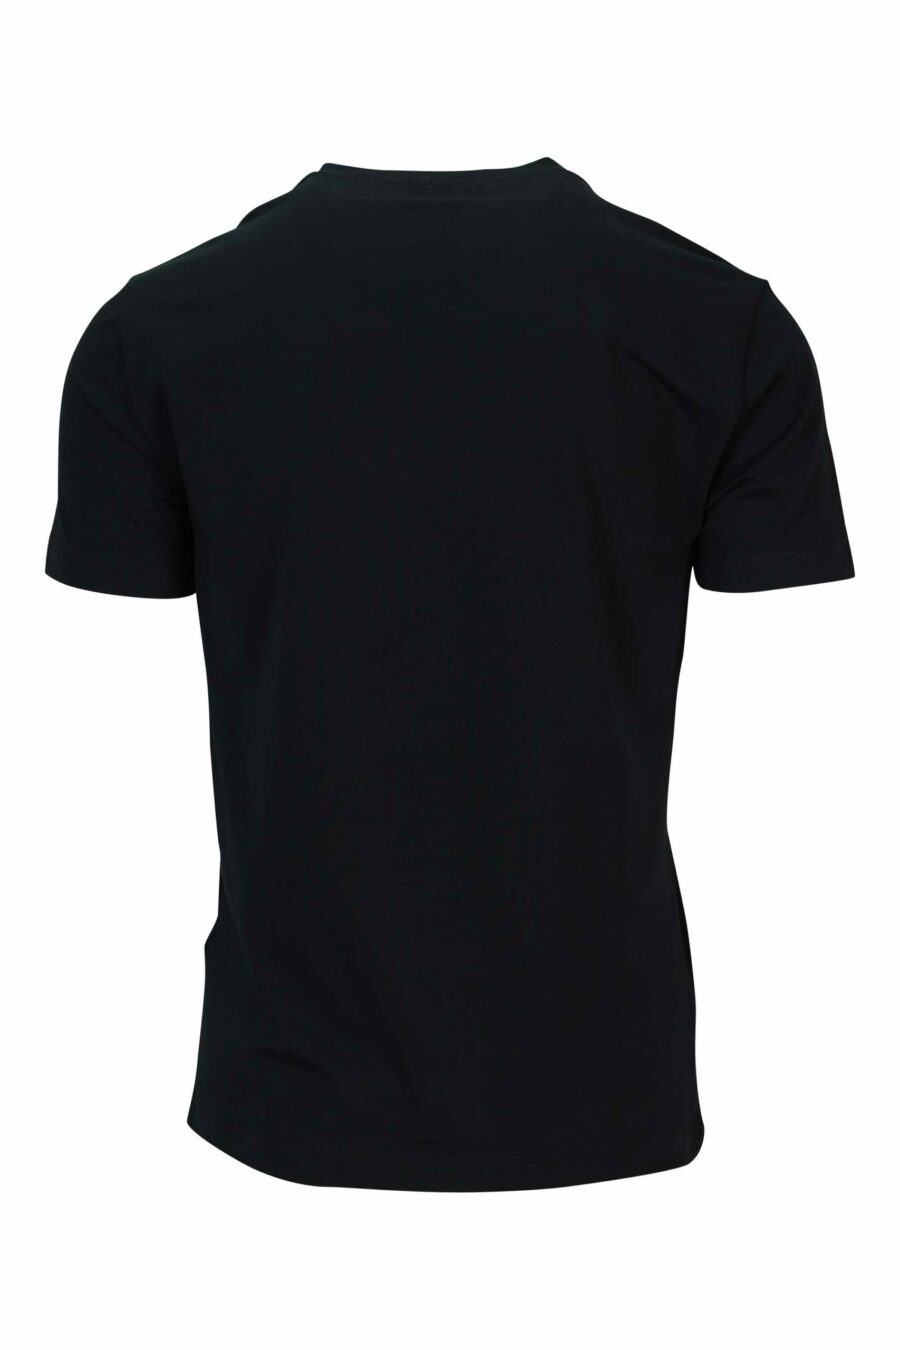 T-shirt schwarz mit blauem "lux identity" maxilogo - 8058947491346 1 1 skaliert